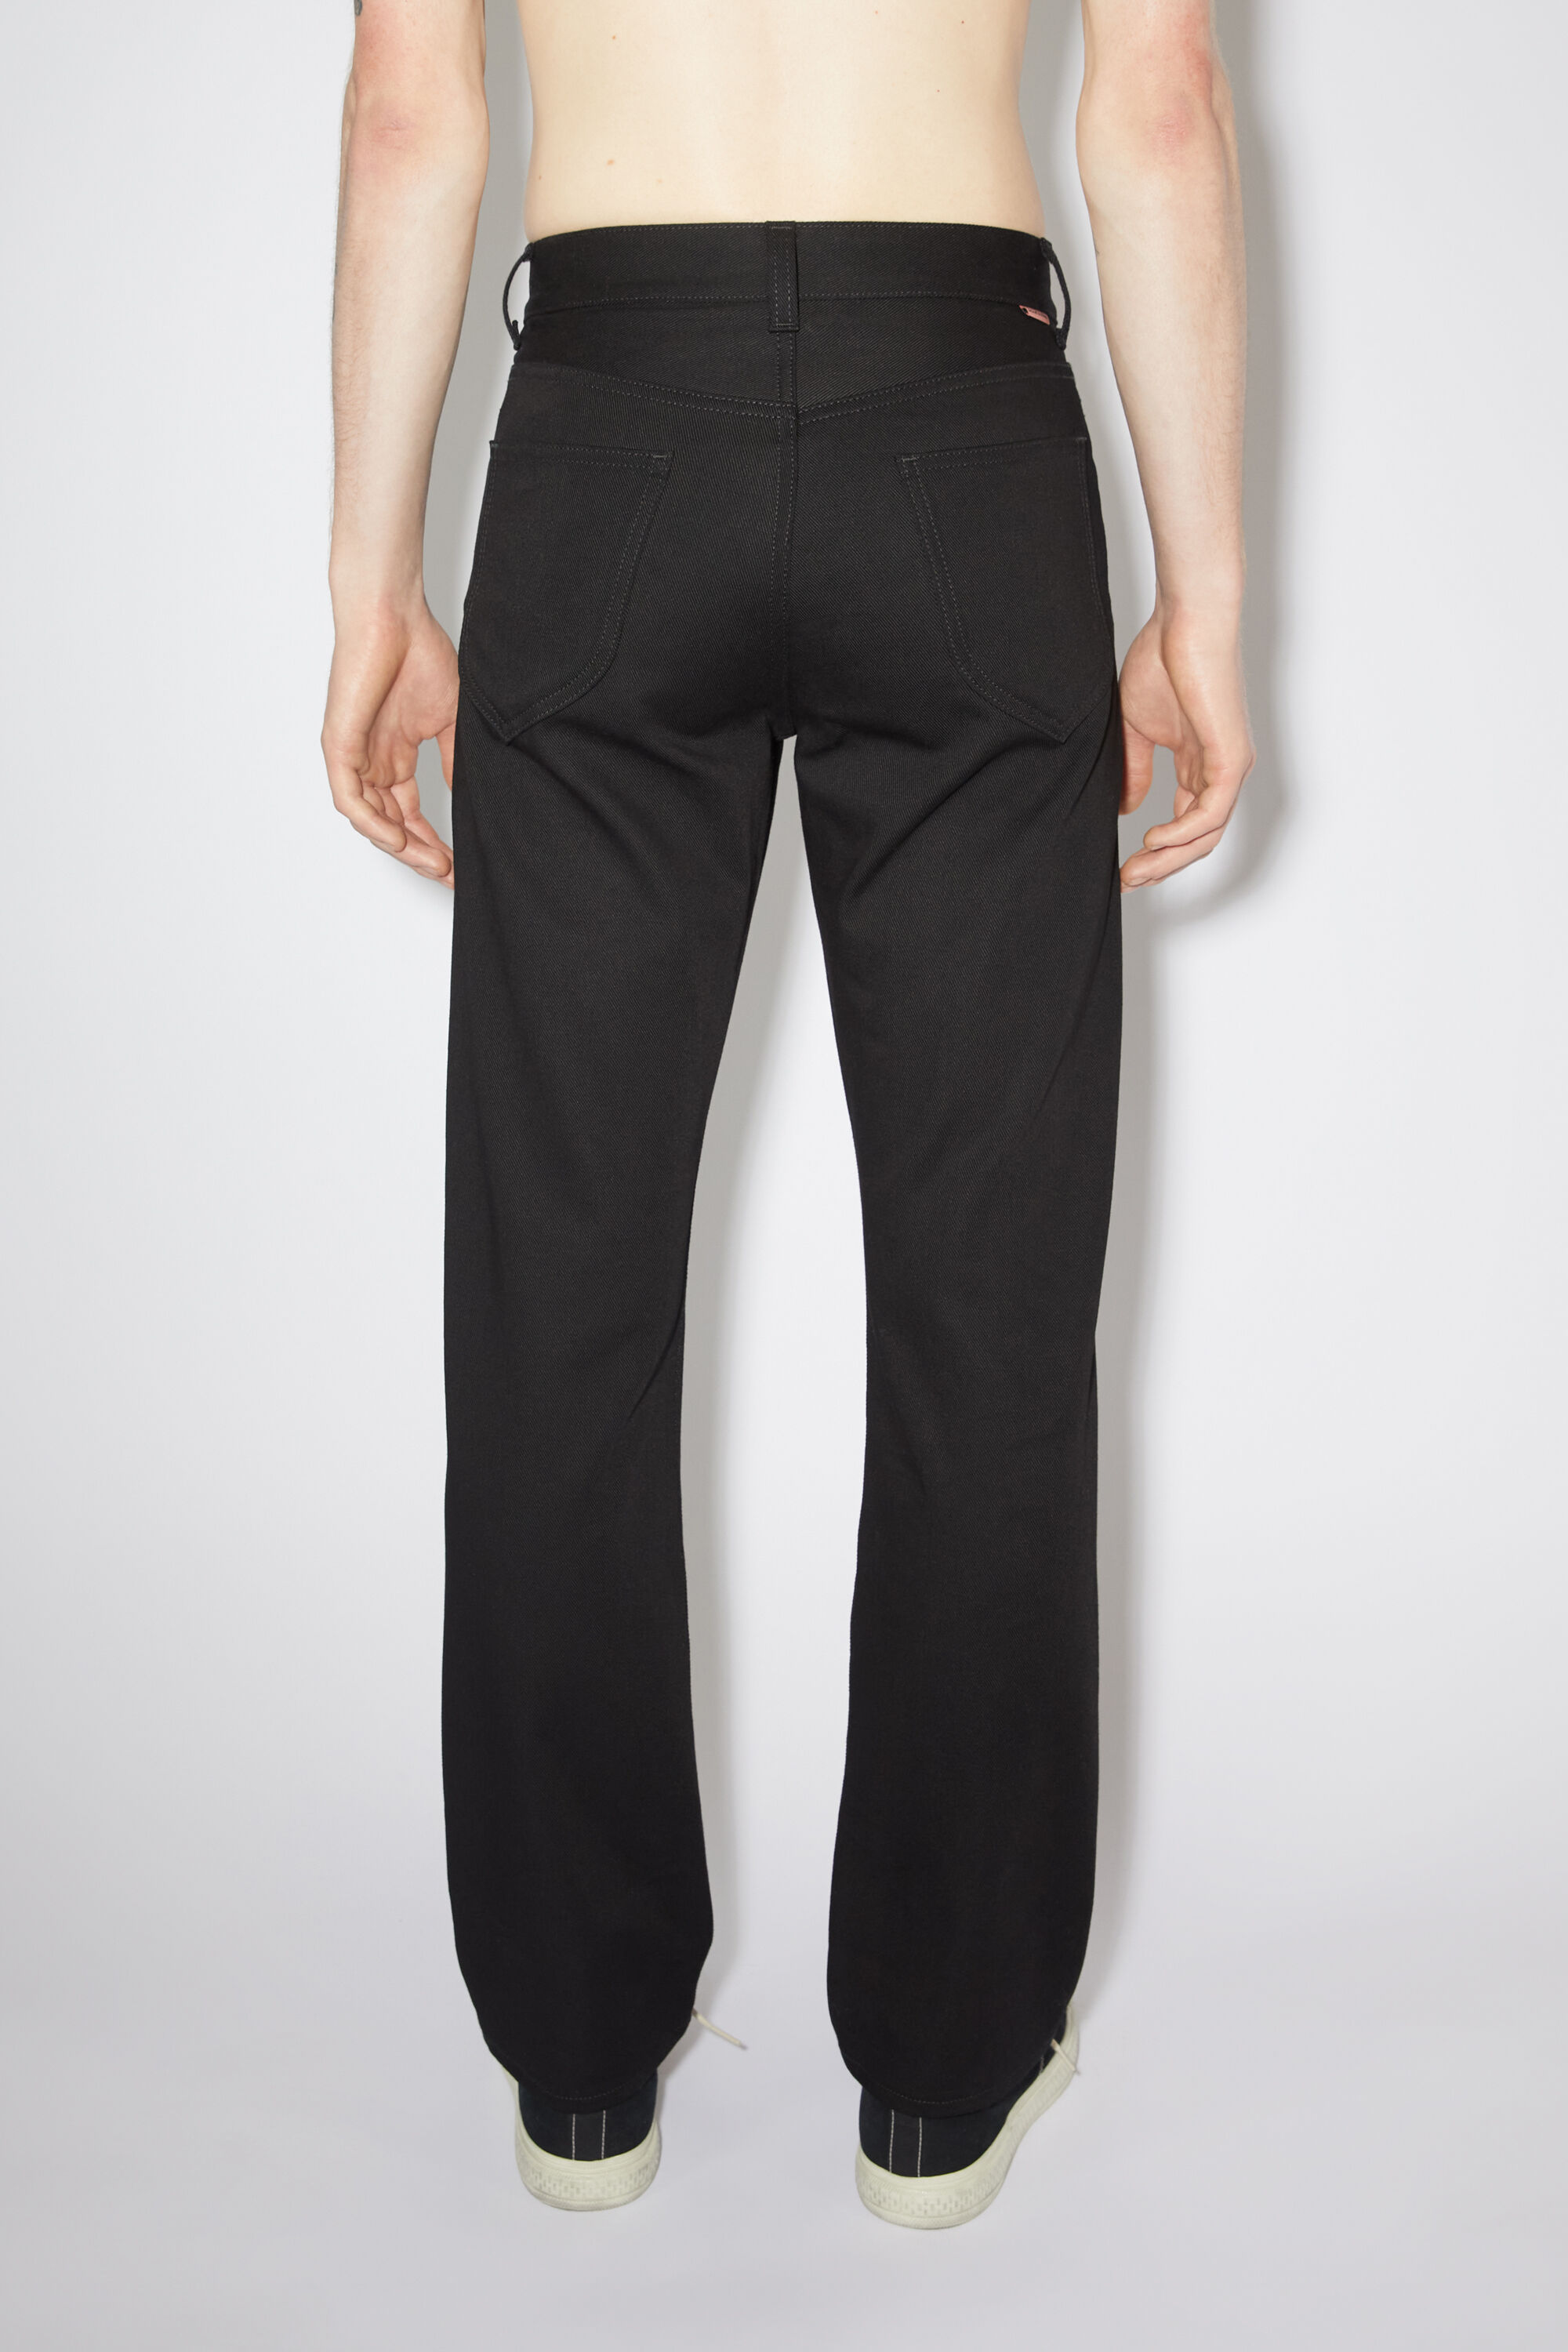 아크네 스튜디오 Acne Studios Regular fit jeans - 1950 - All black